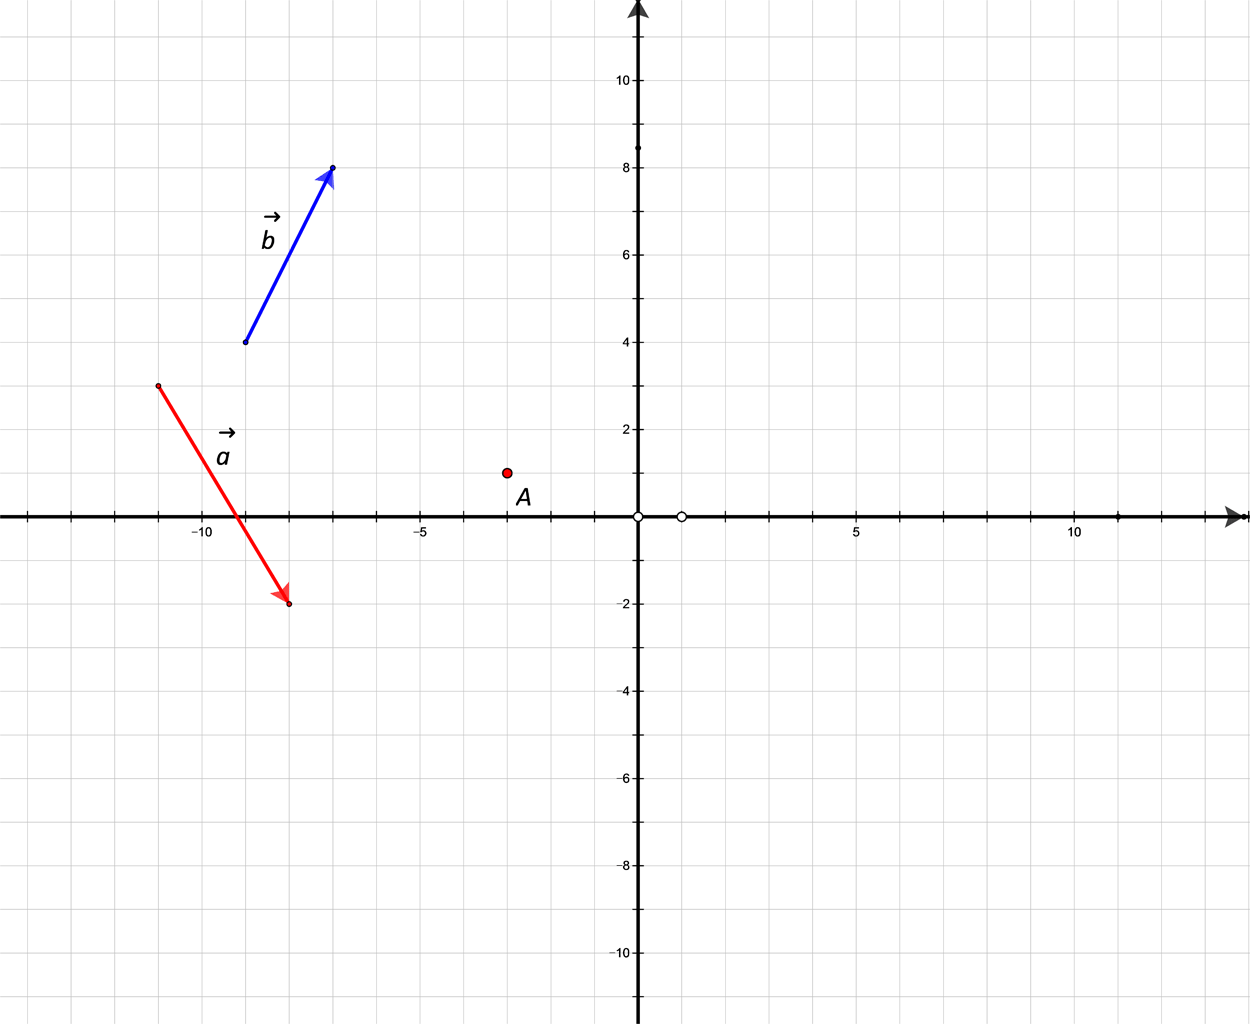 Slika prikazuje nekolinearne vektore a i b u pravokutnom koordinatnom sustavu.